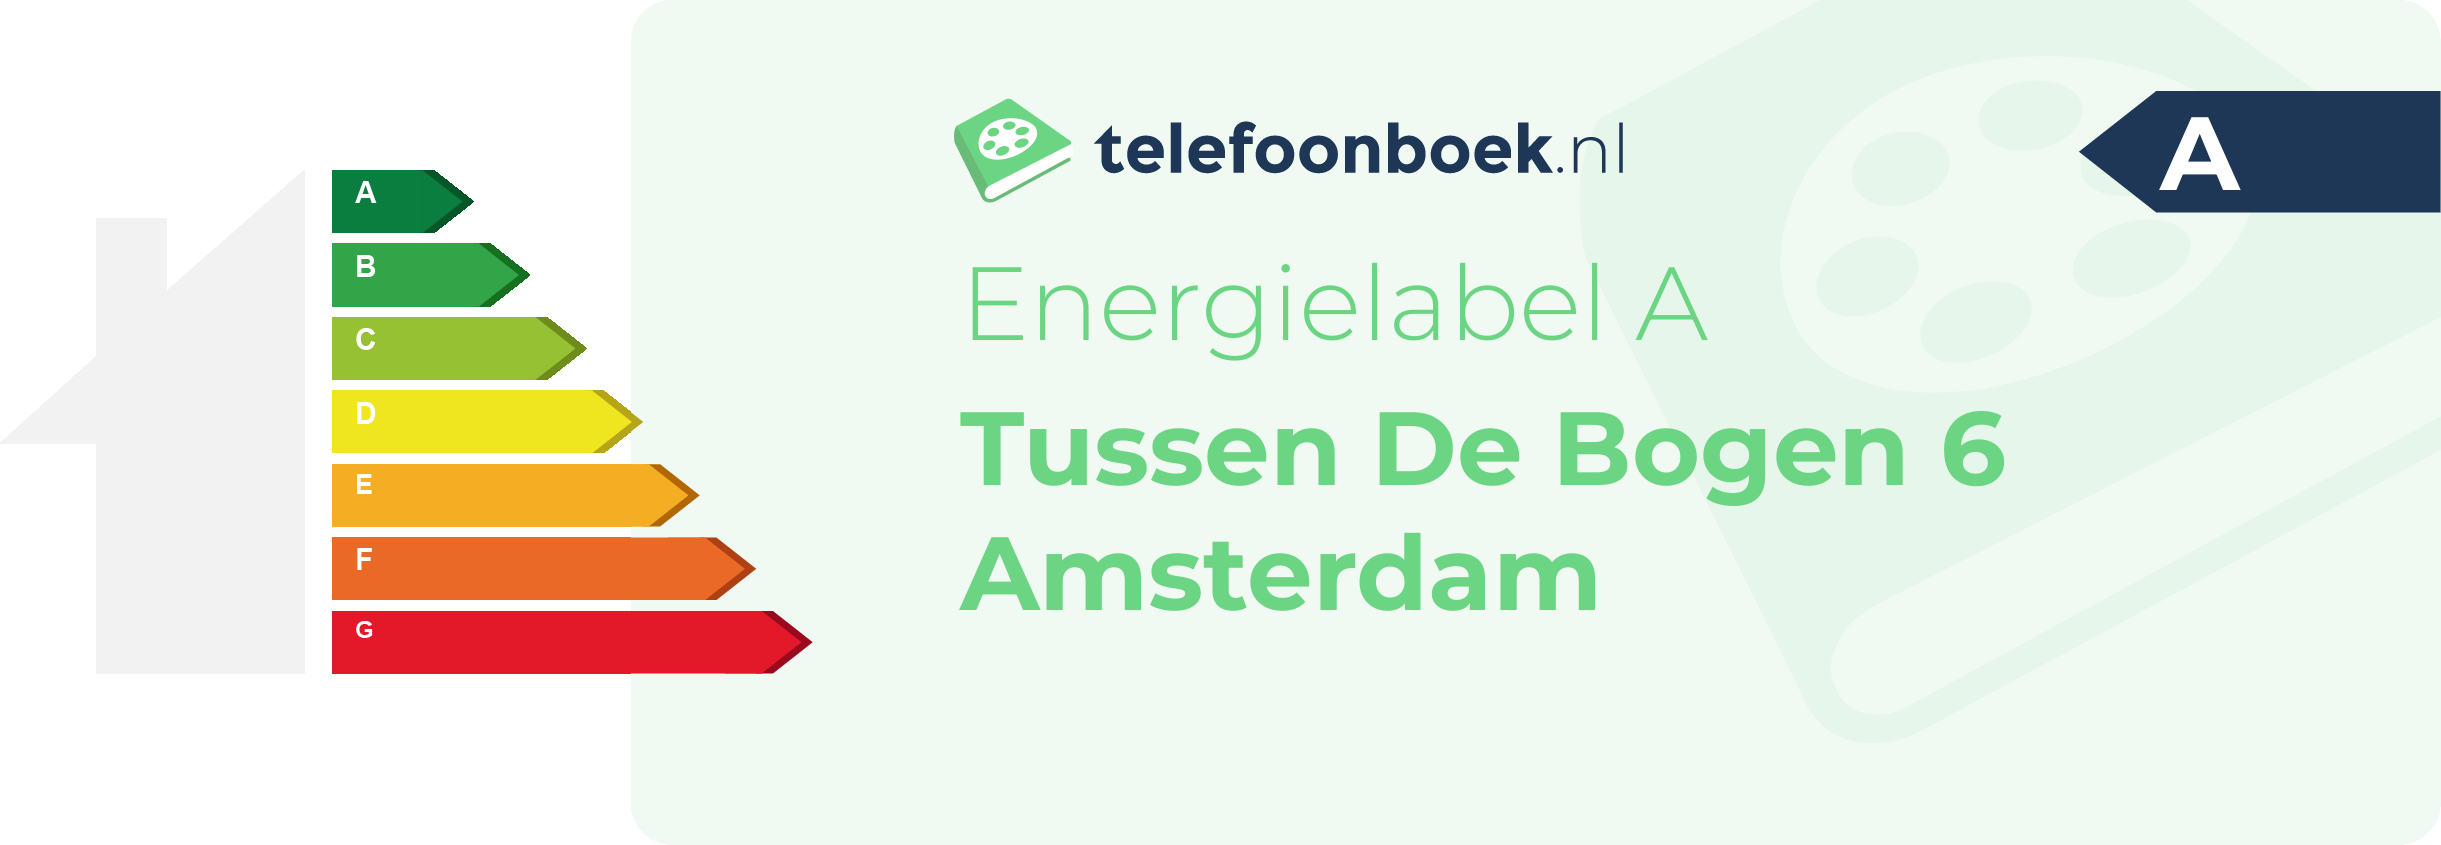 Energielabel Tussen De Bogen 6 Amsterdam